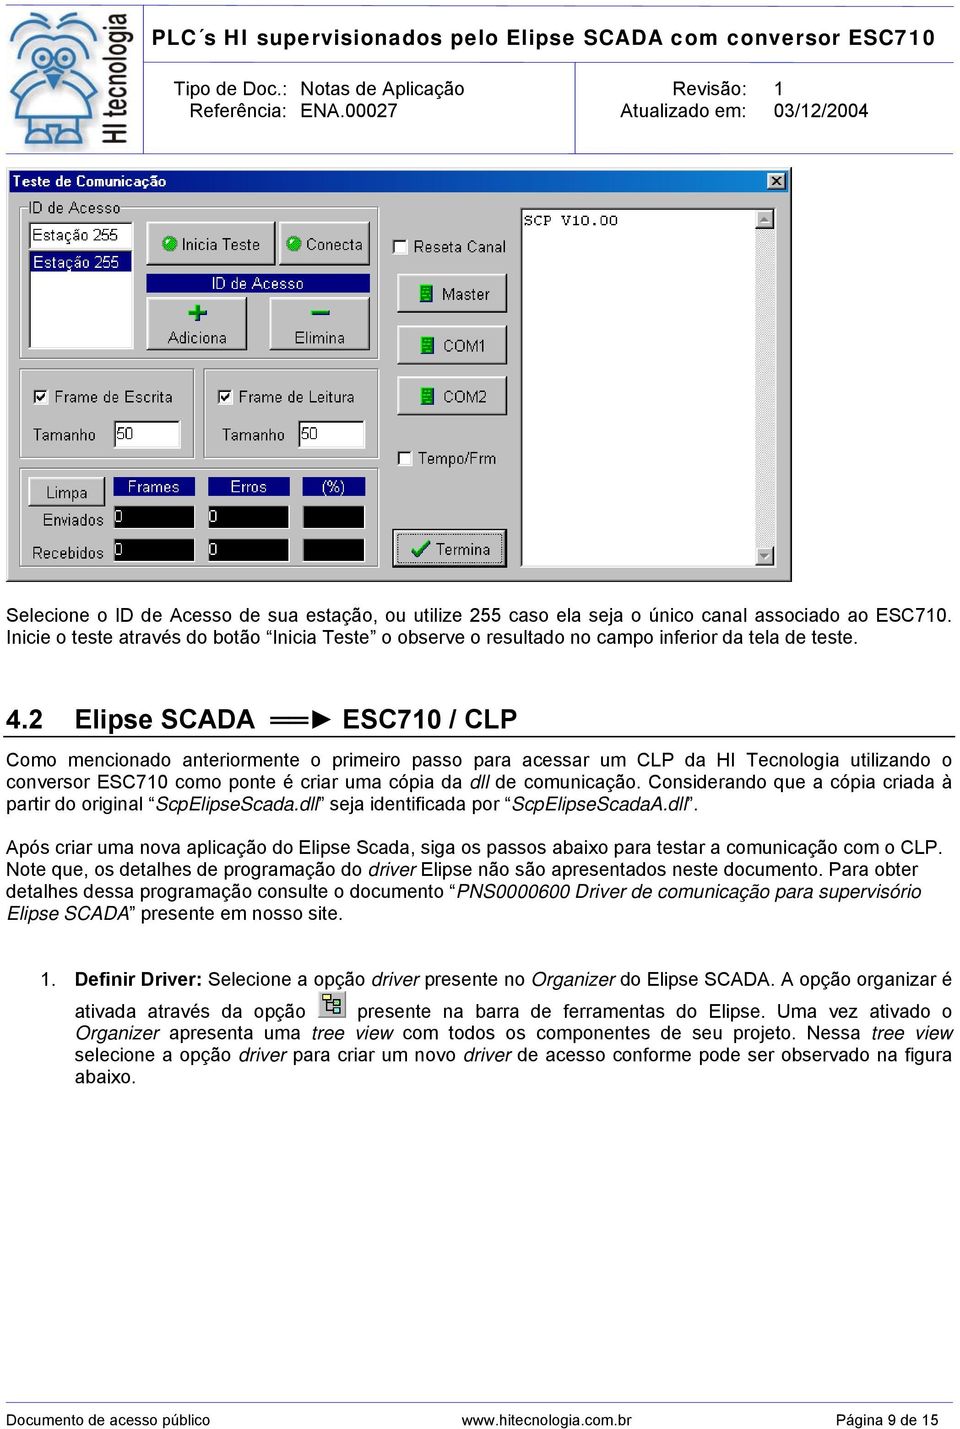 2 Elipse SCADA ESC710 / CLP Como mencionado anteriormente o primeiro passo para acessar um CLP da HI Tecnologia utilizando o conversor ESC710 como ponte é criar uma cópia da dll de comunicação.